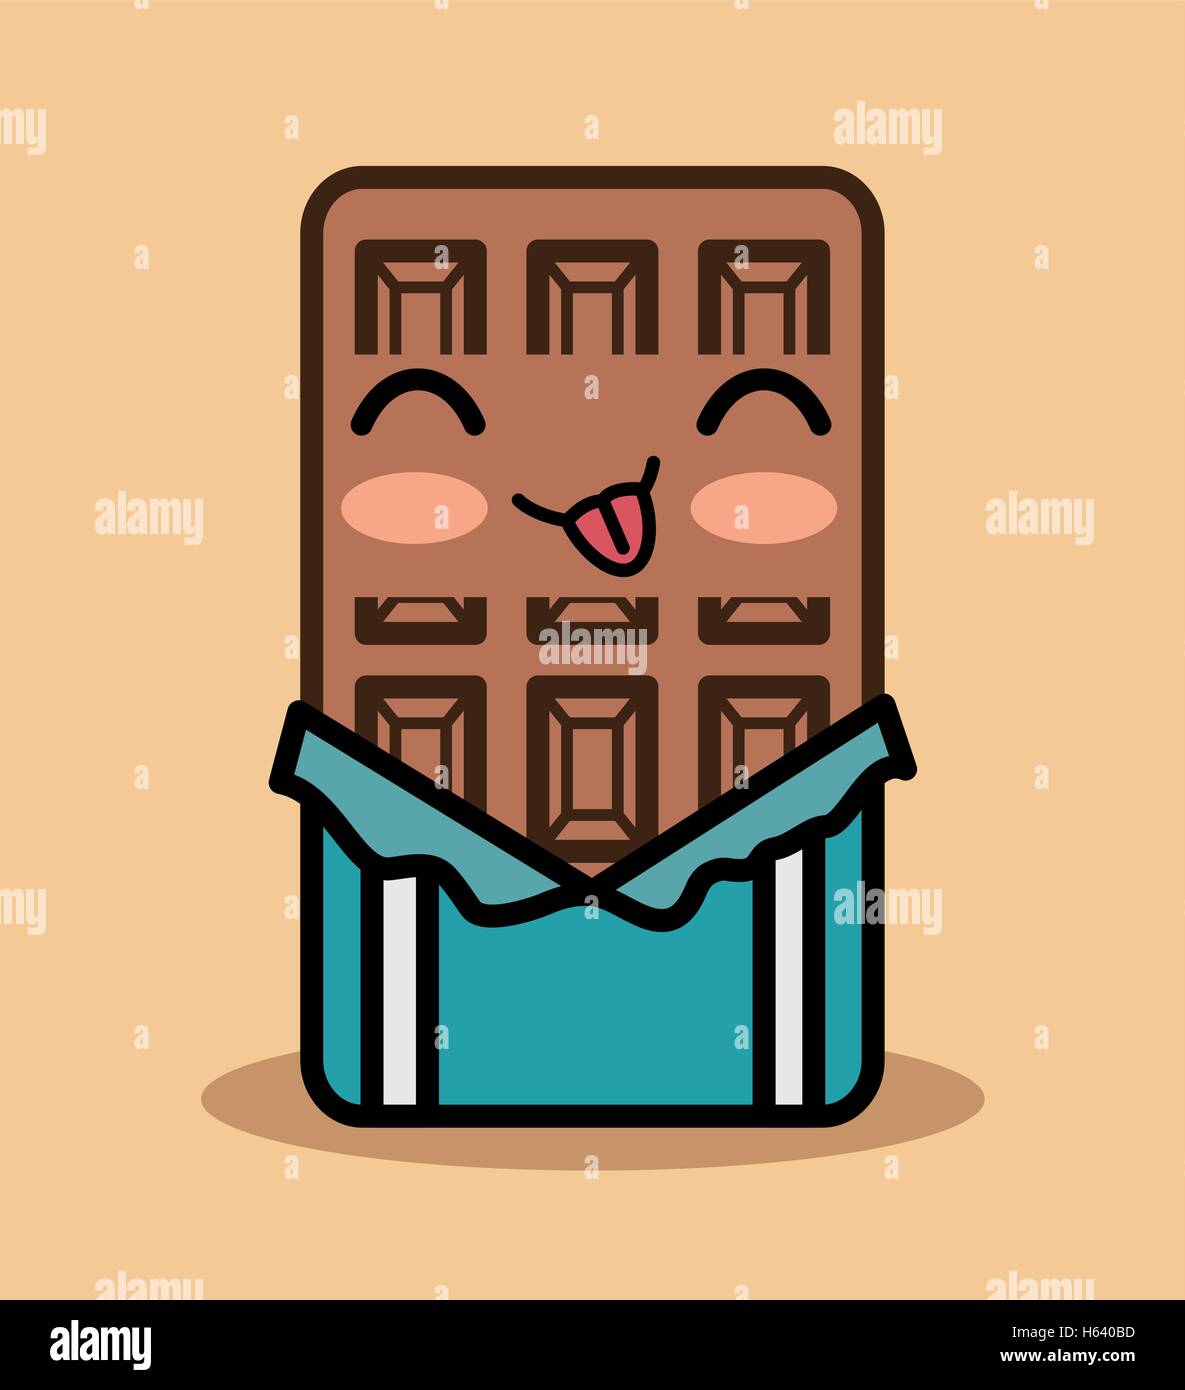 chocolate bar kawaii icon design Stock Vector Image & Art - Alamy